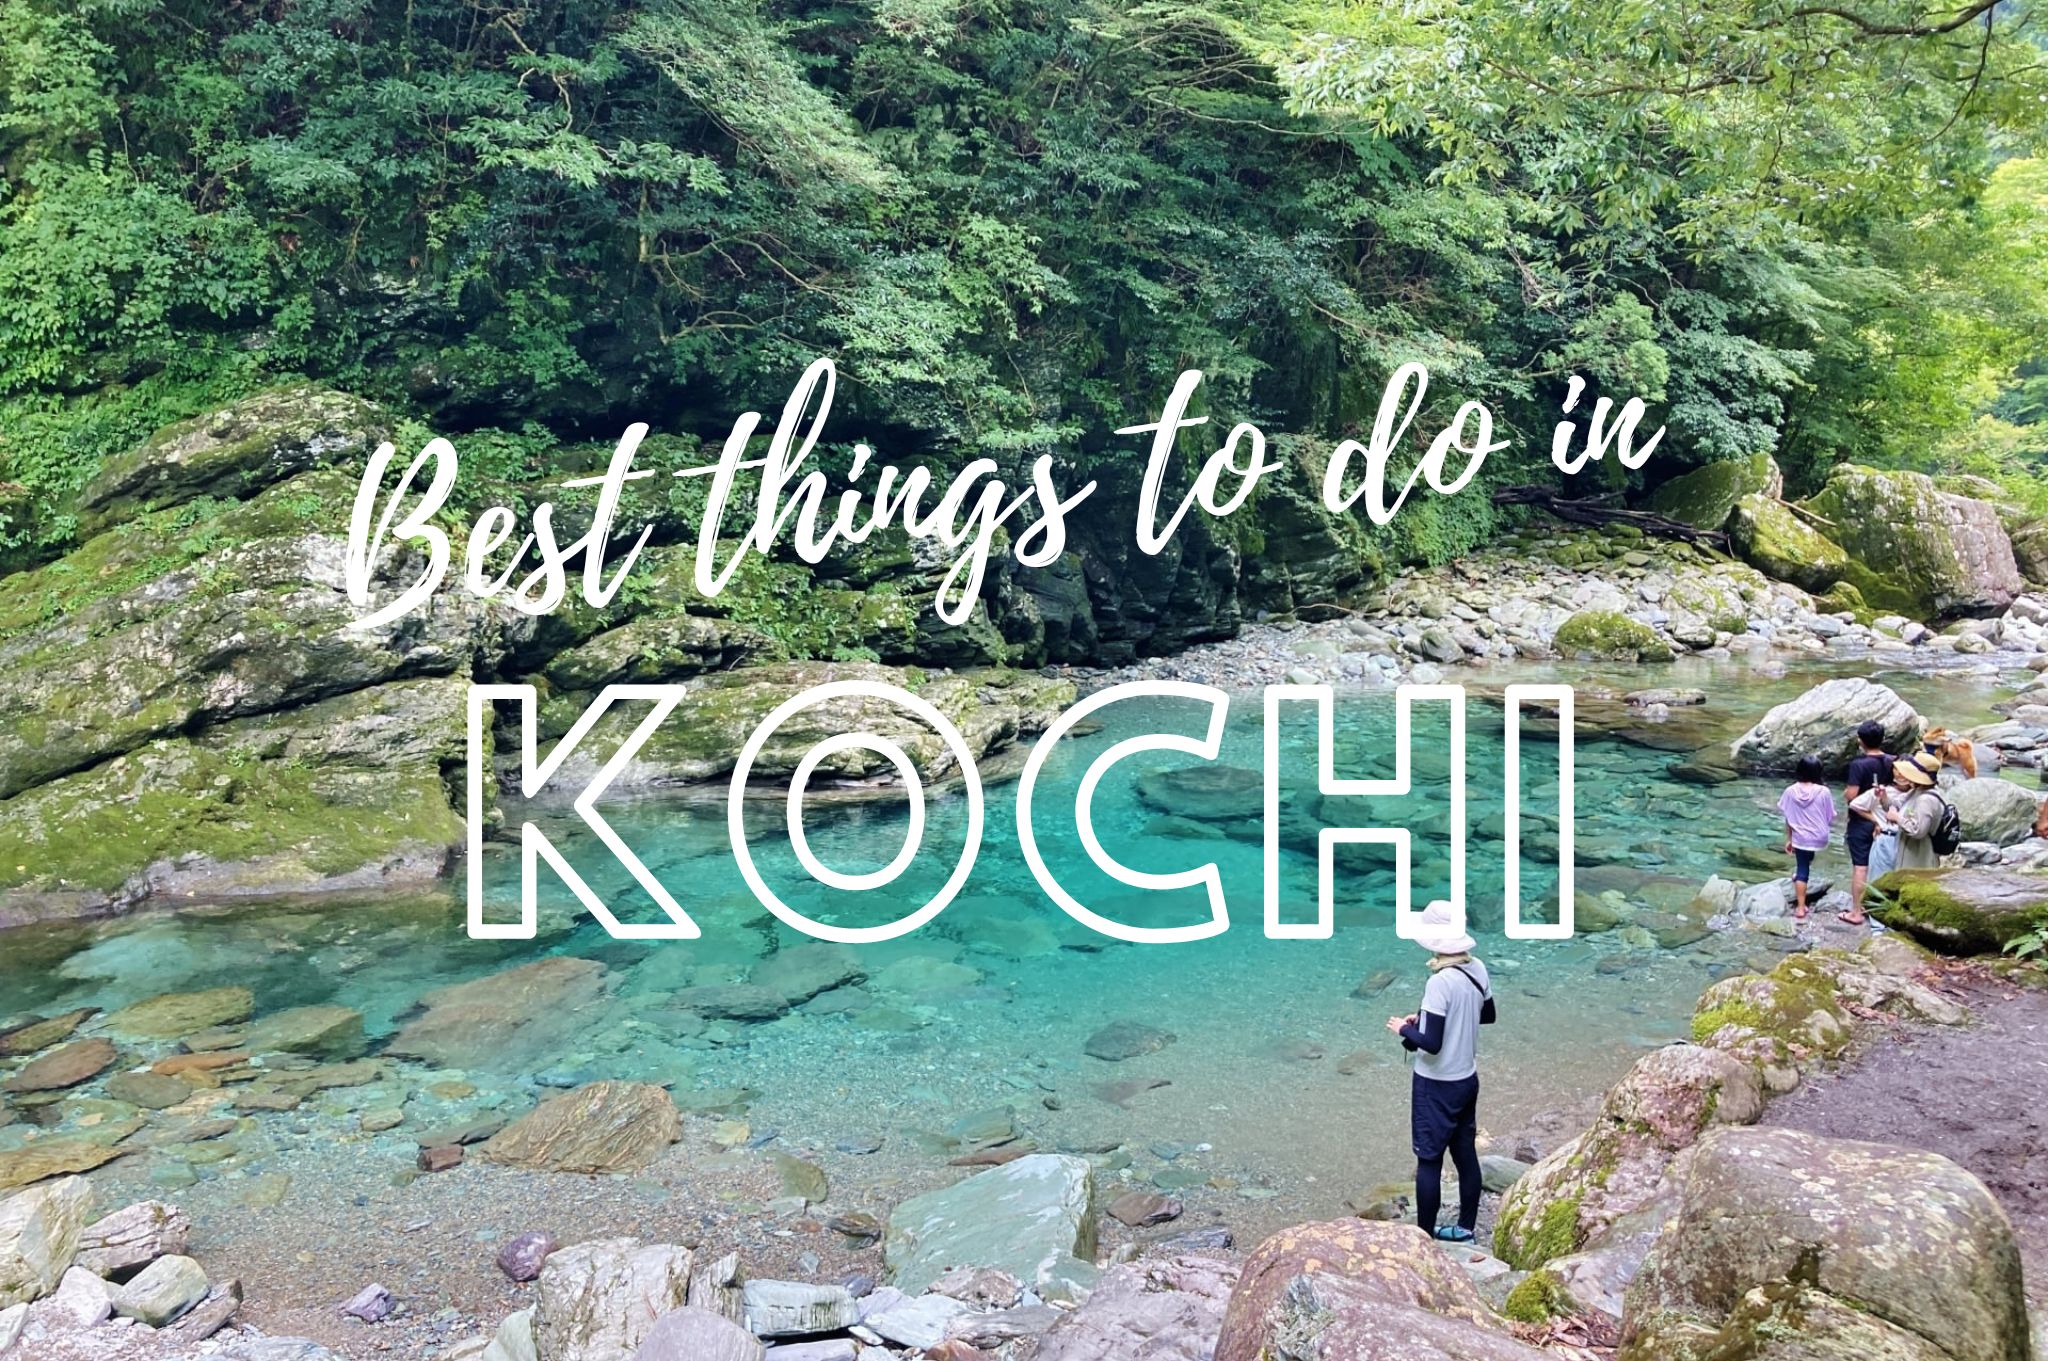 kochi tourism website